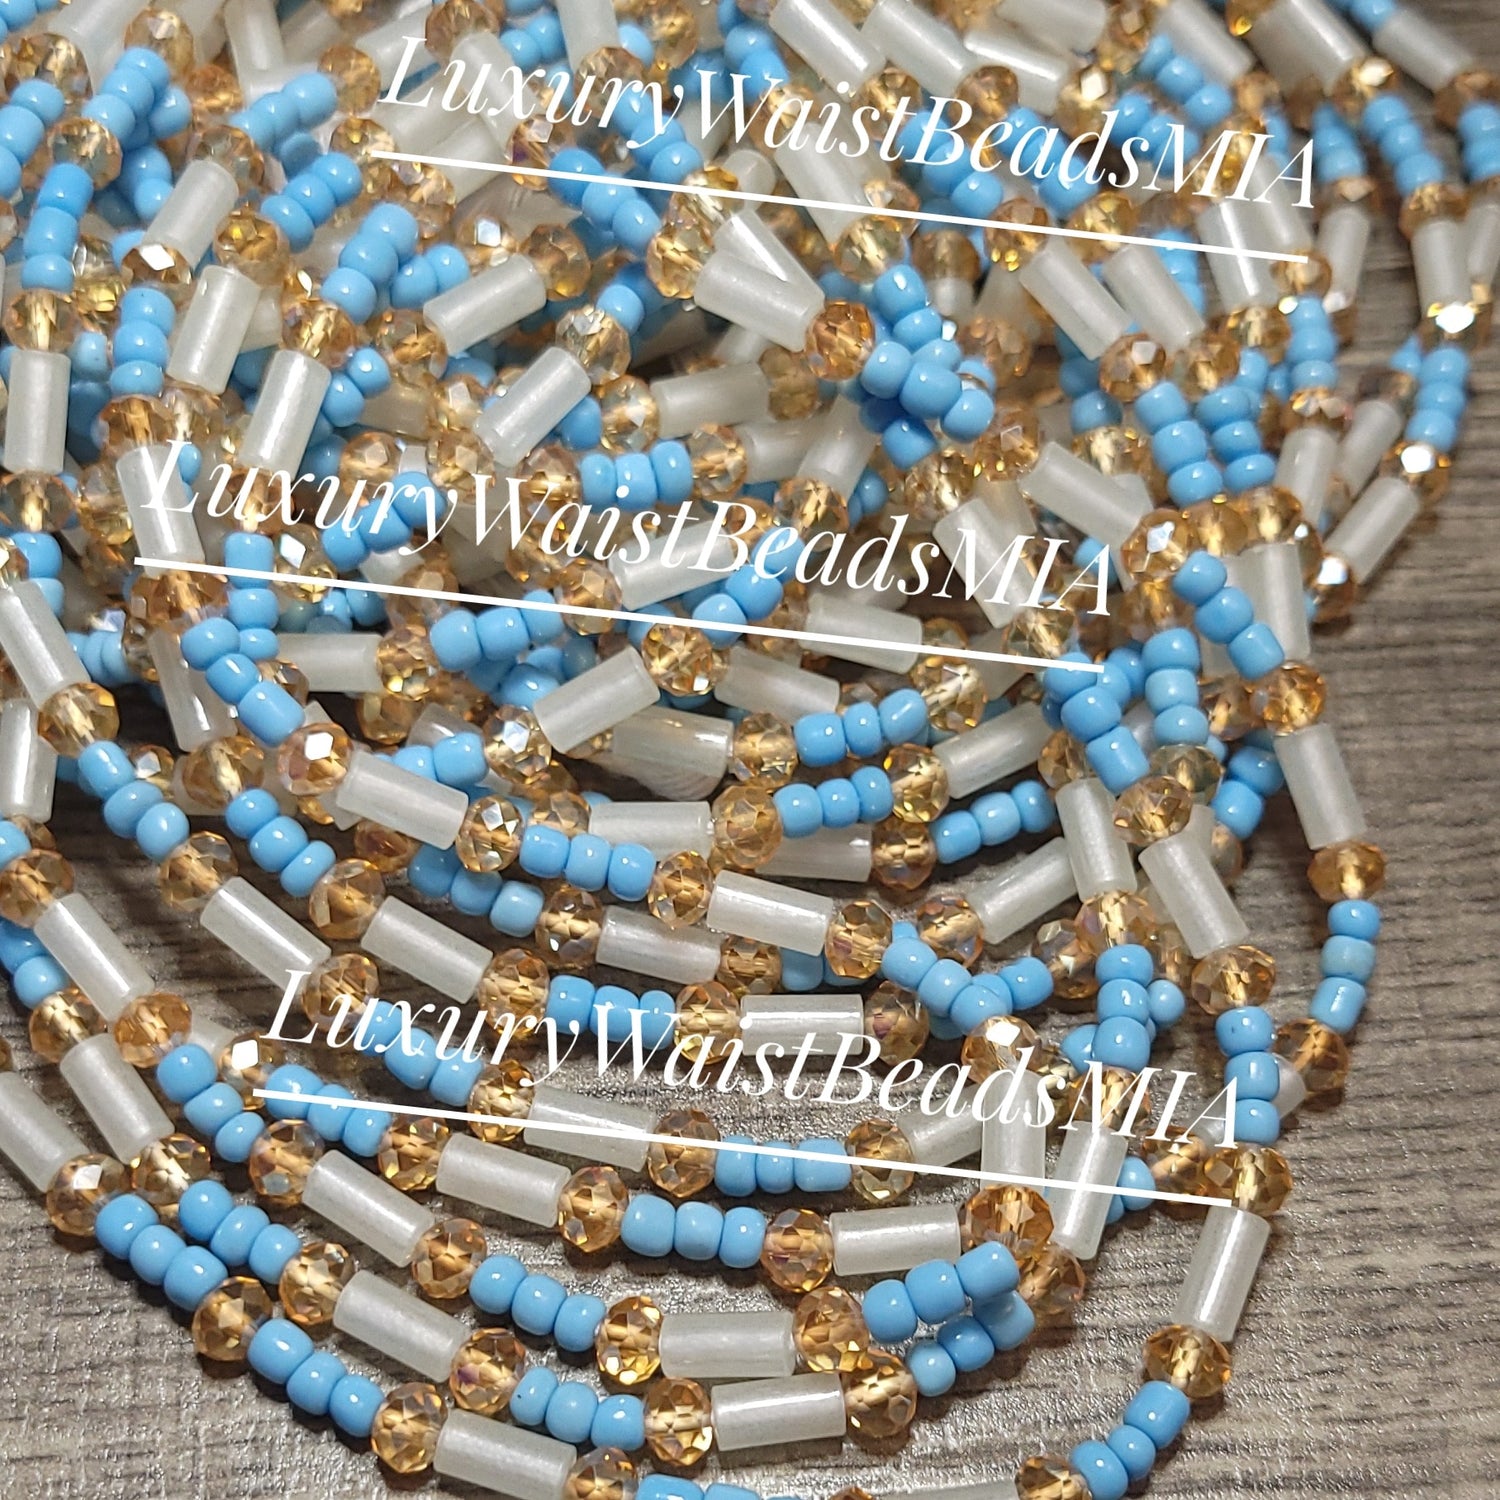 Luxury Waist Beads